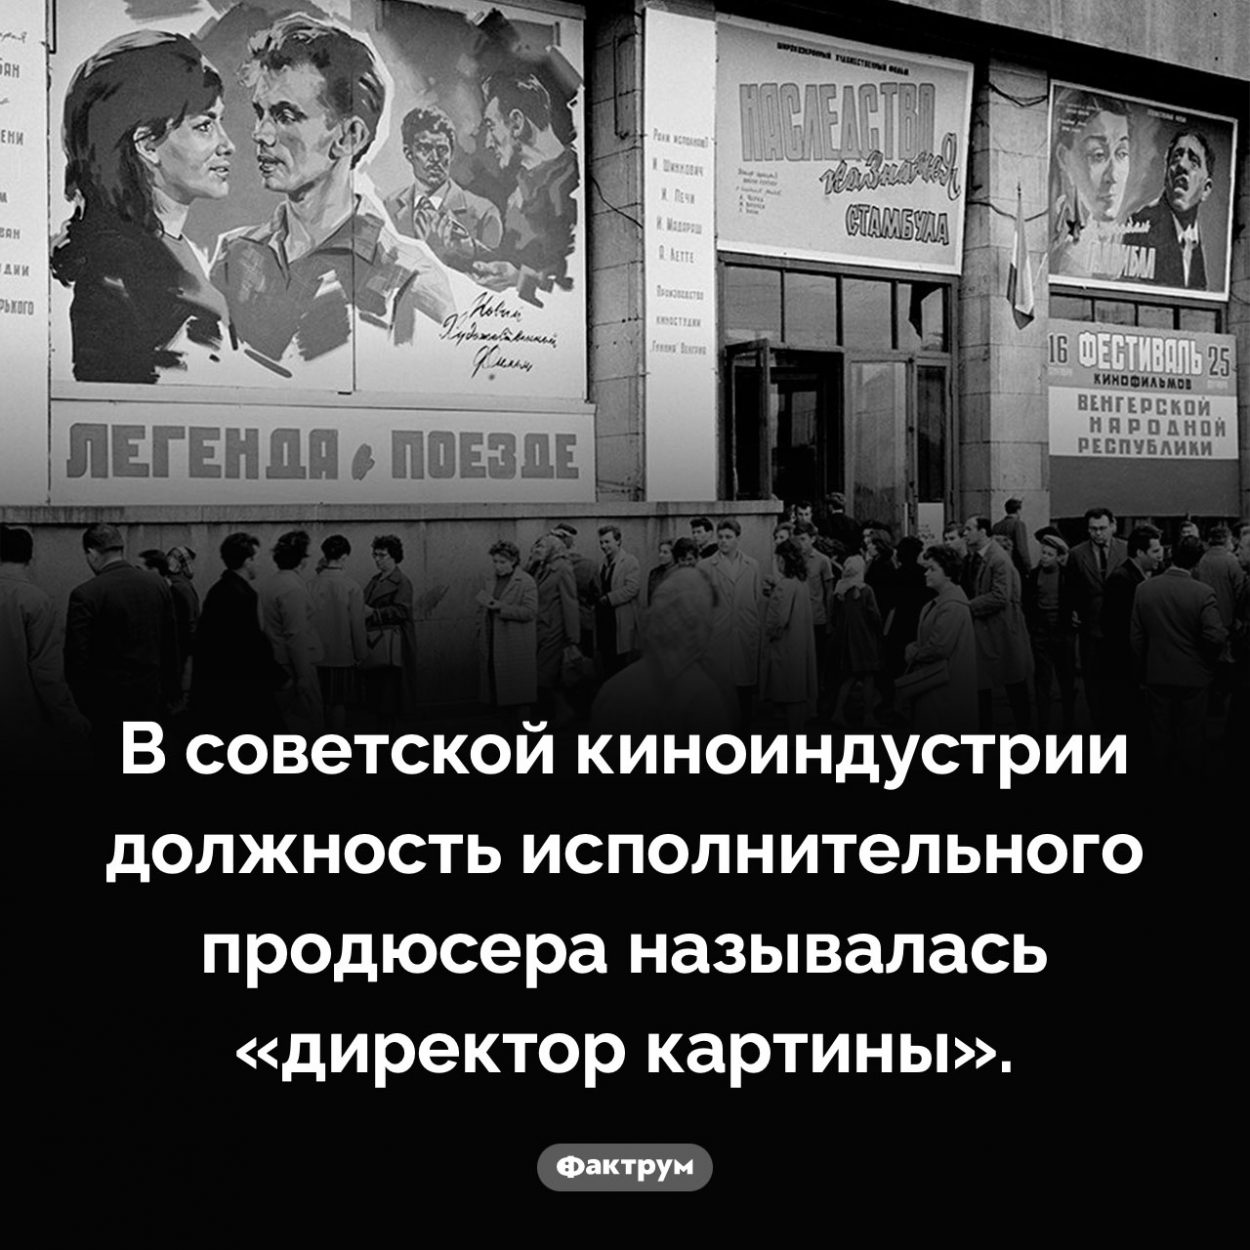 Кто такой директор картины. В советской киноиндустрии должность исполнительного продюсера называлась «директор картины».